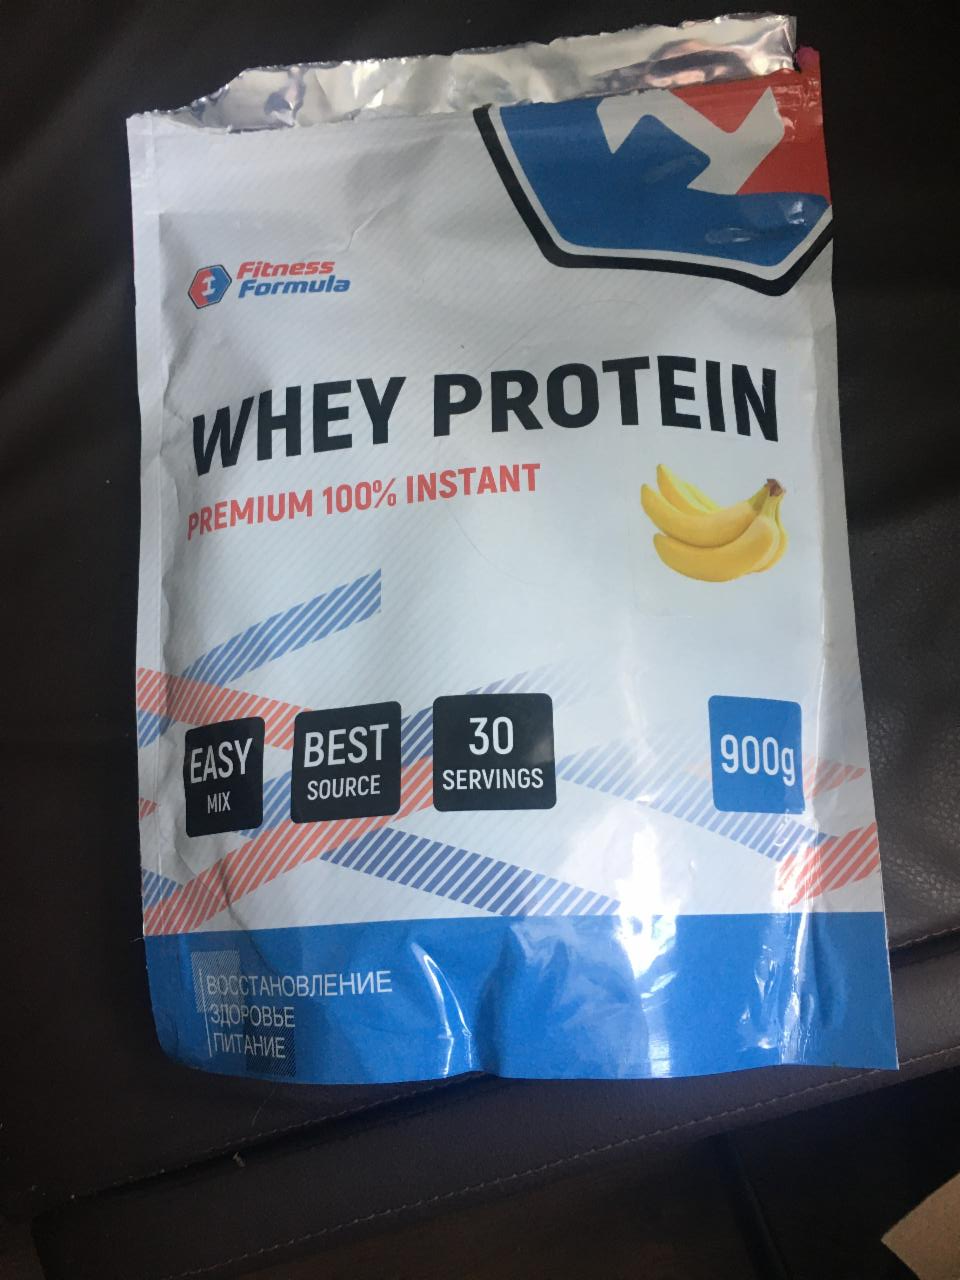 Фото - протеин банан Whey protein premium 100% instant Fitness formula